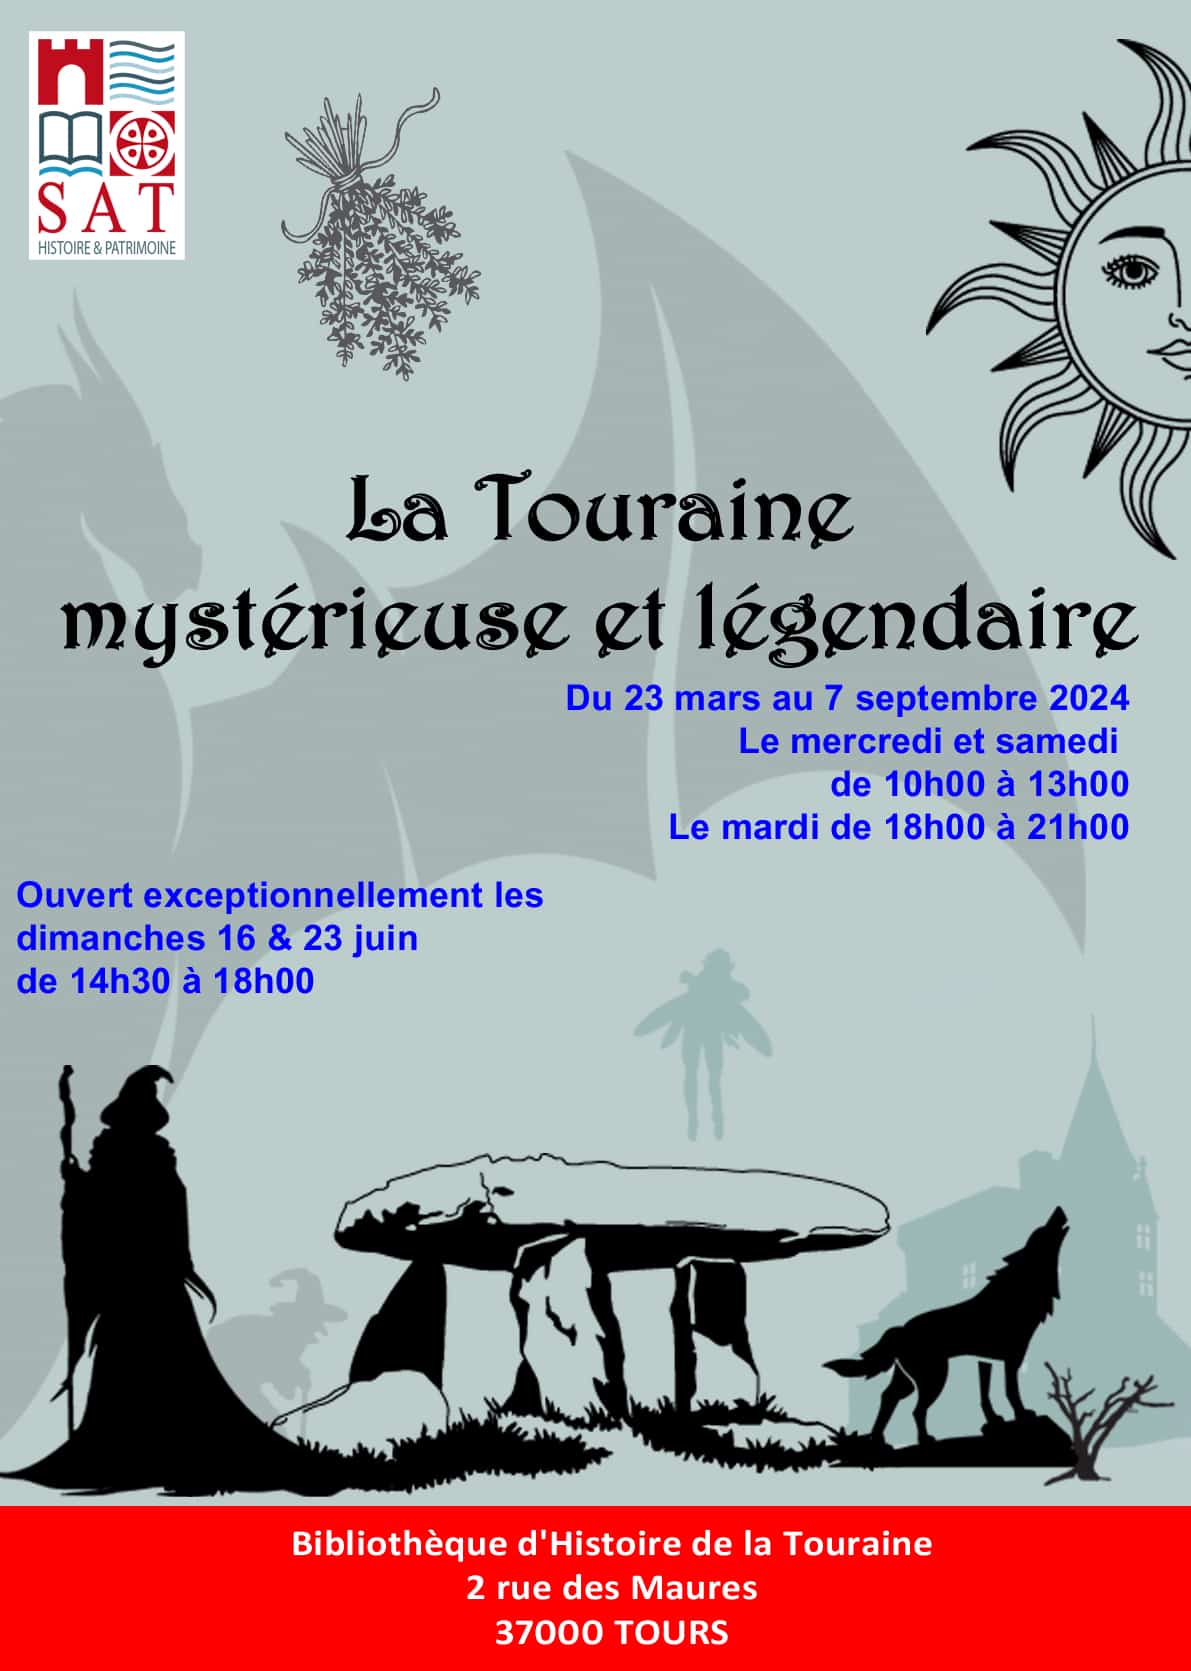 23 mars au 7 septembre 2024 - Exposition "La Touraine mystérieuse et légendaire"